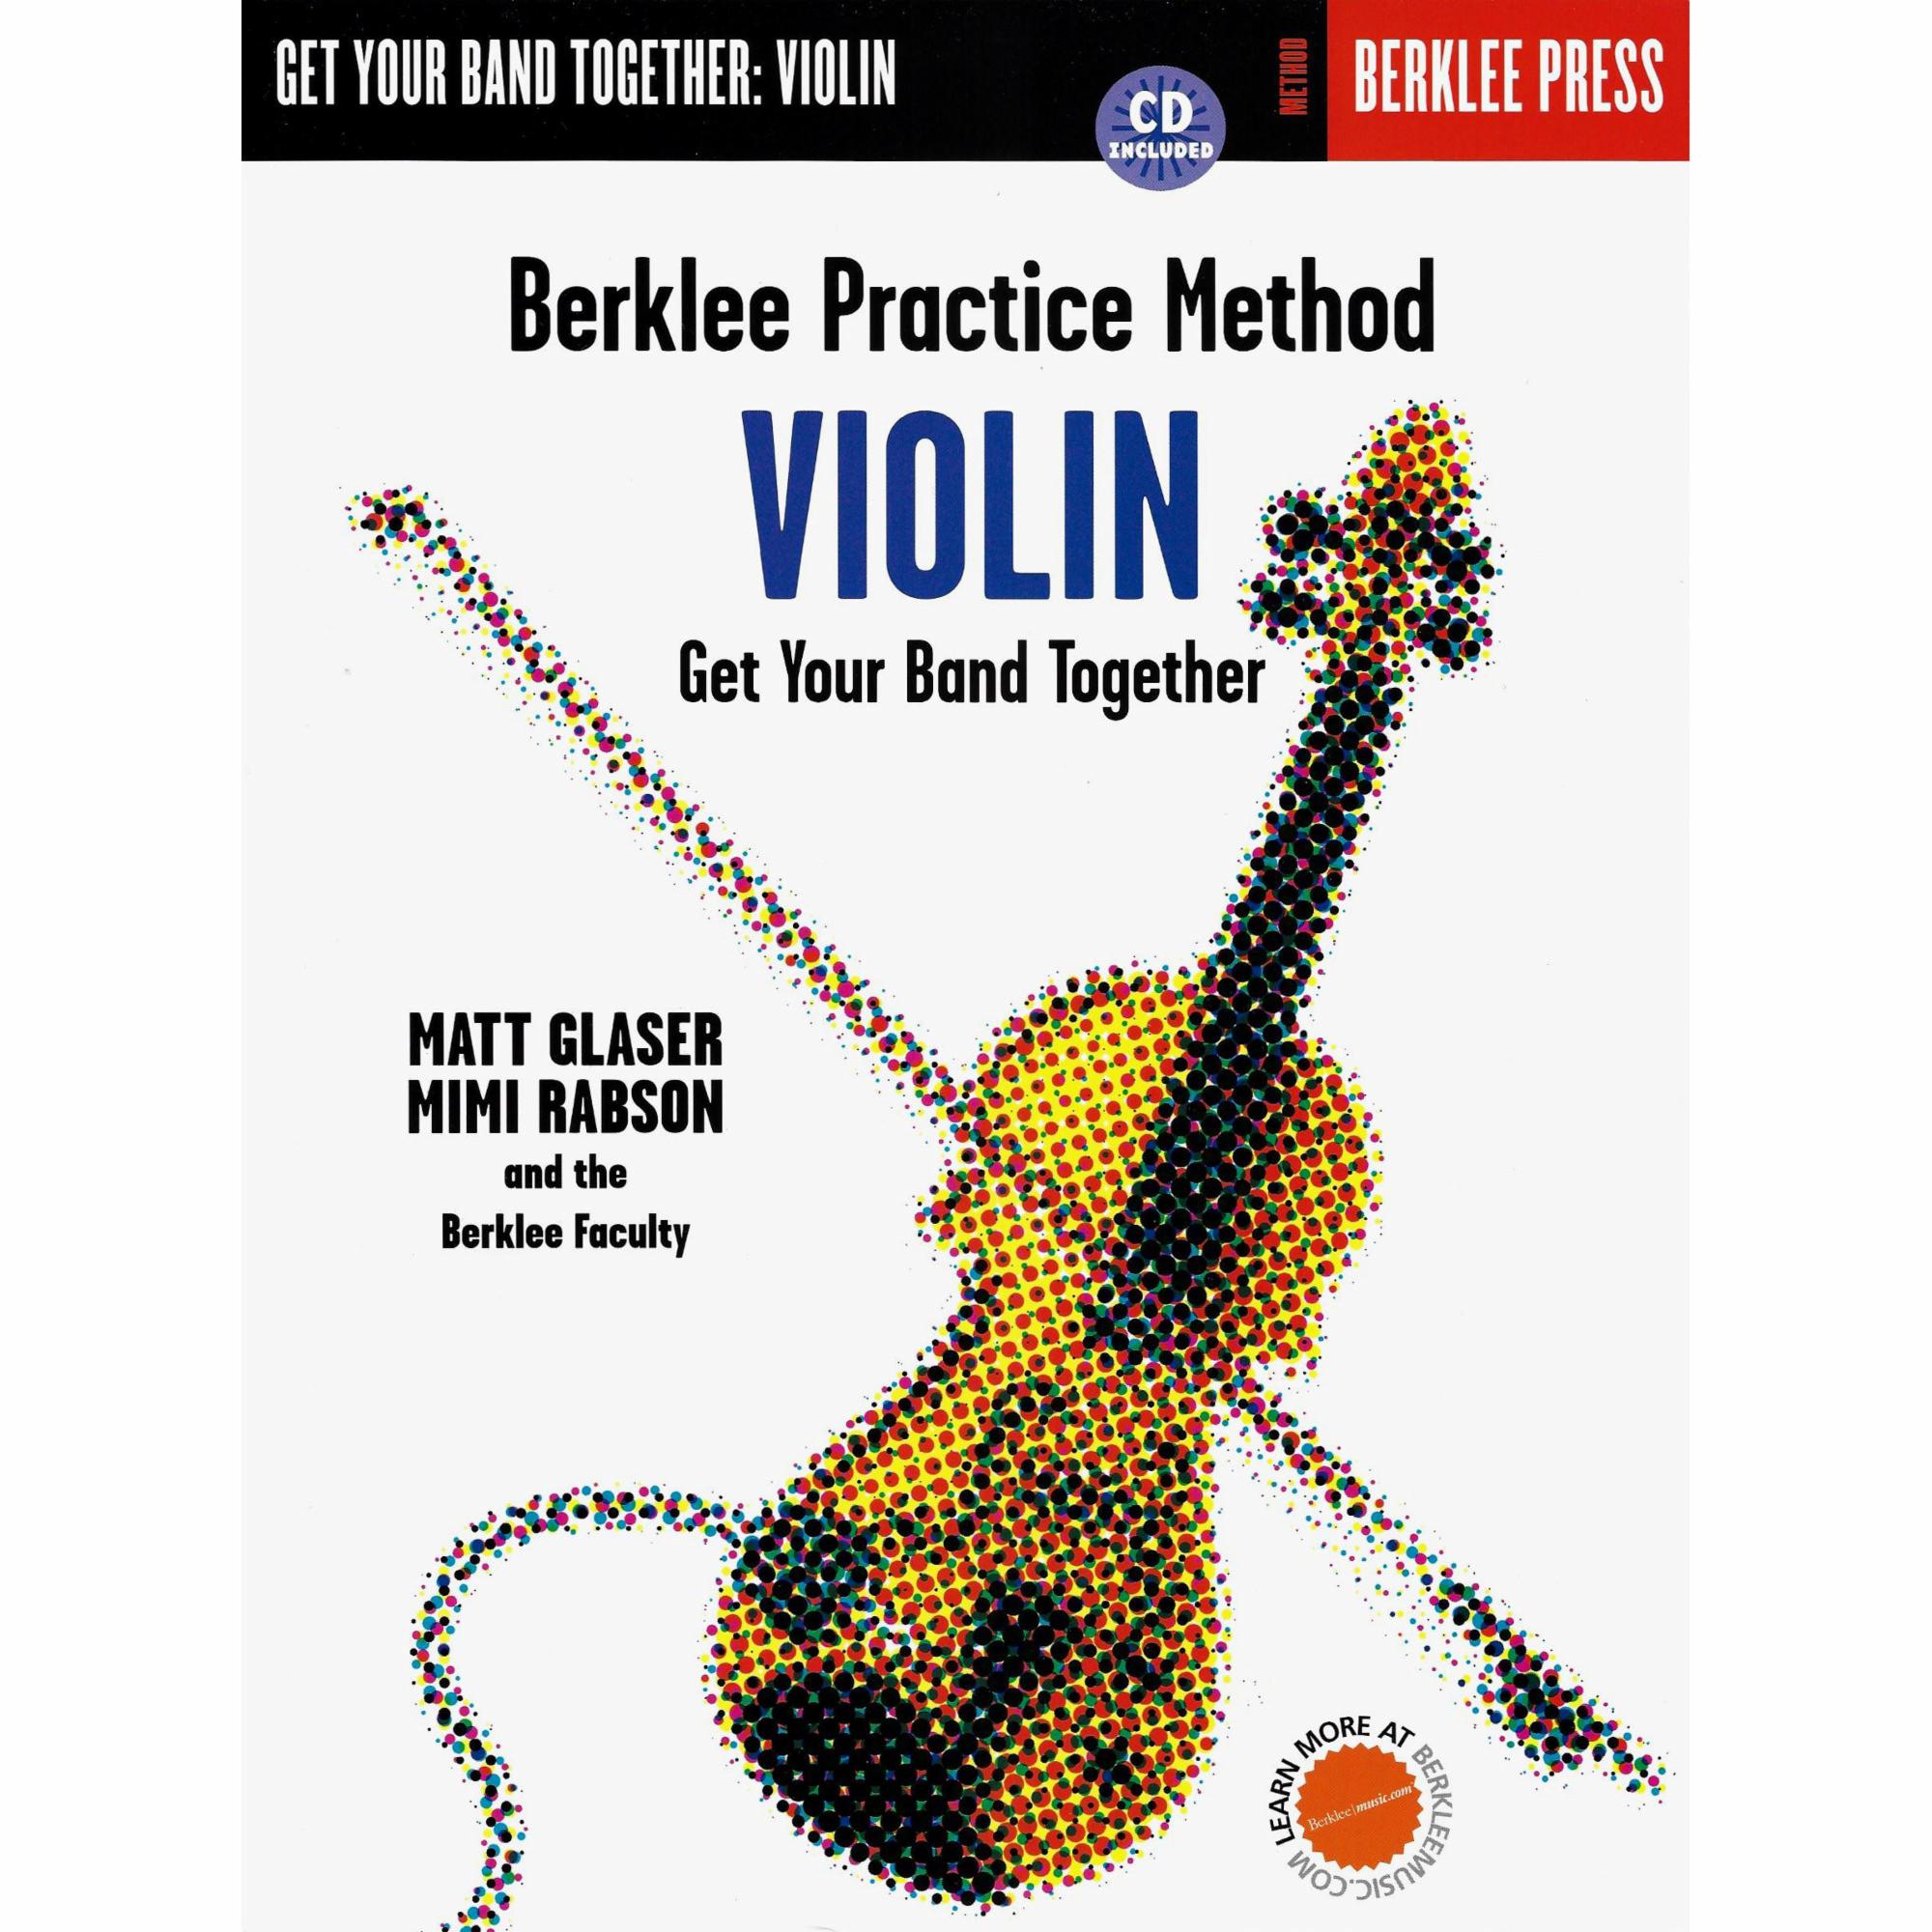 Berklee Practice Method for Violin, Viola, or Cello